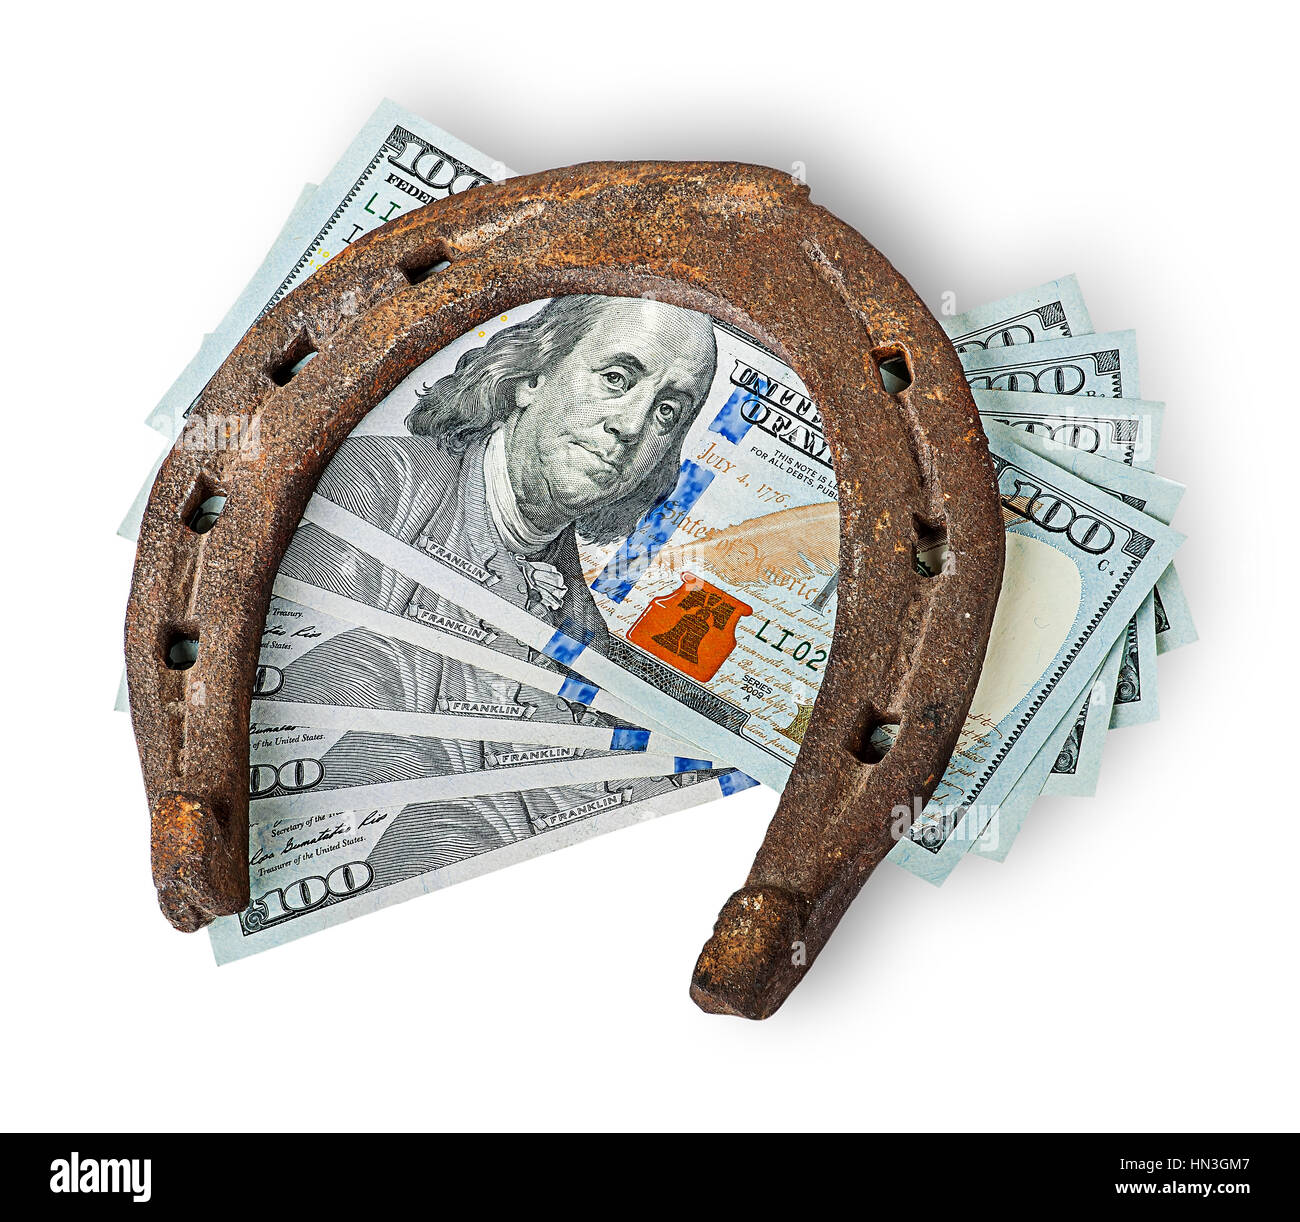 Old rusty horseshoe and money isolated on white background Stock Photo